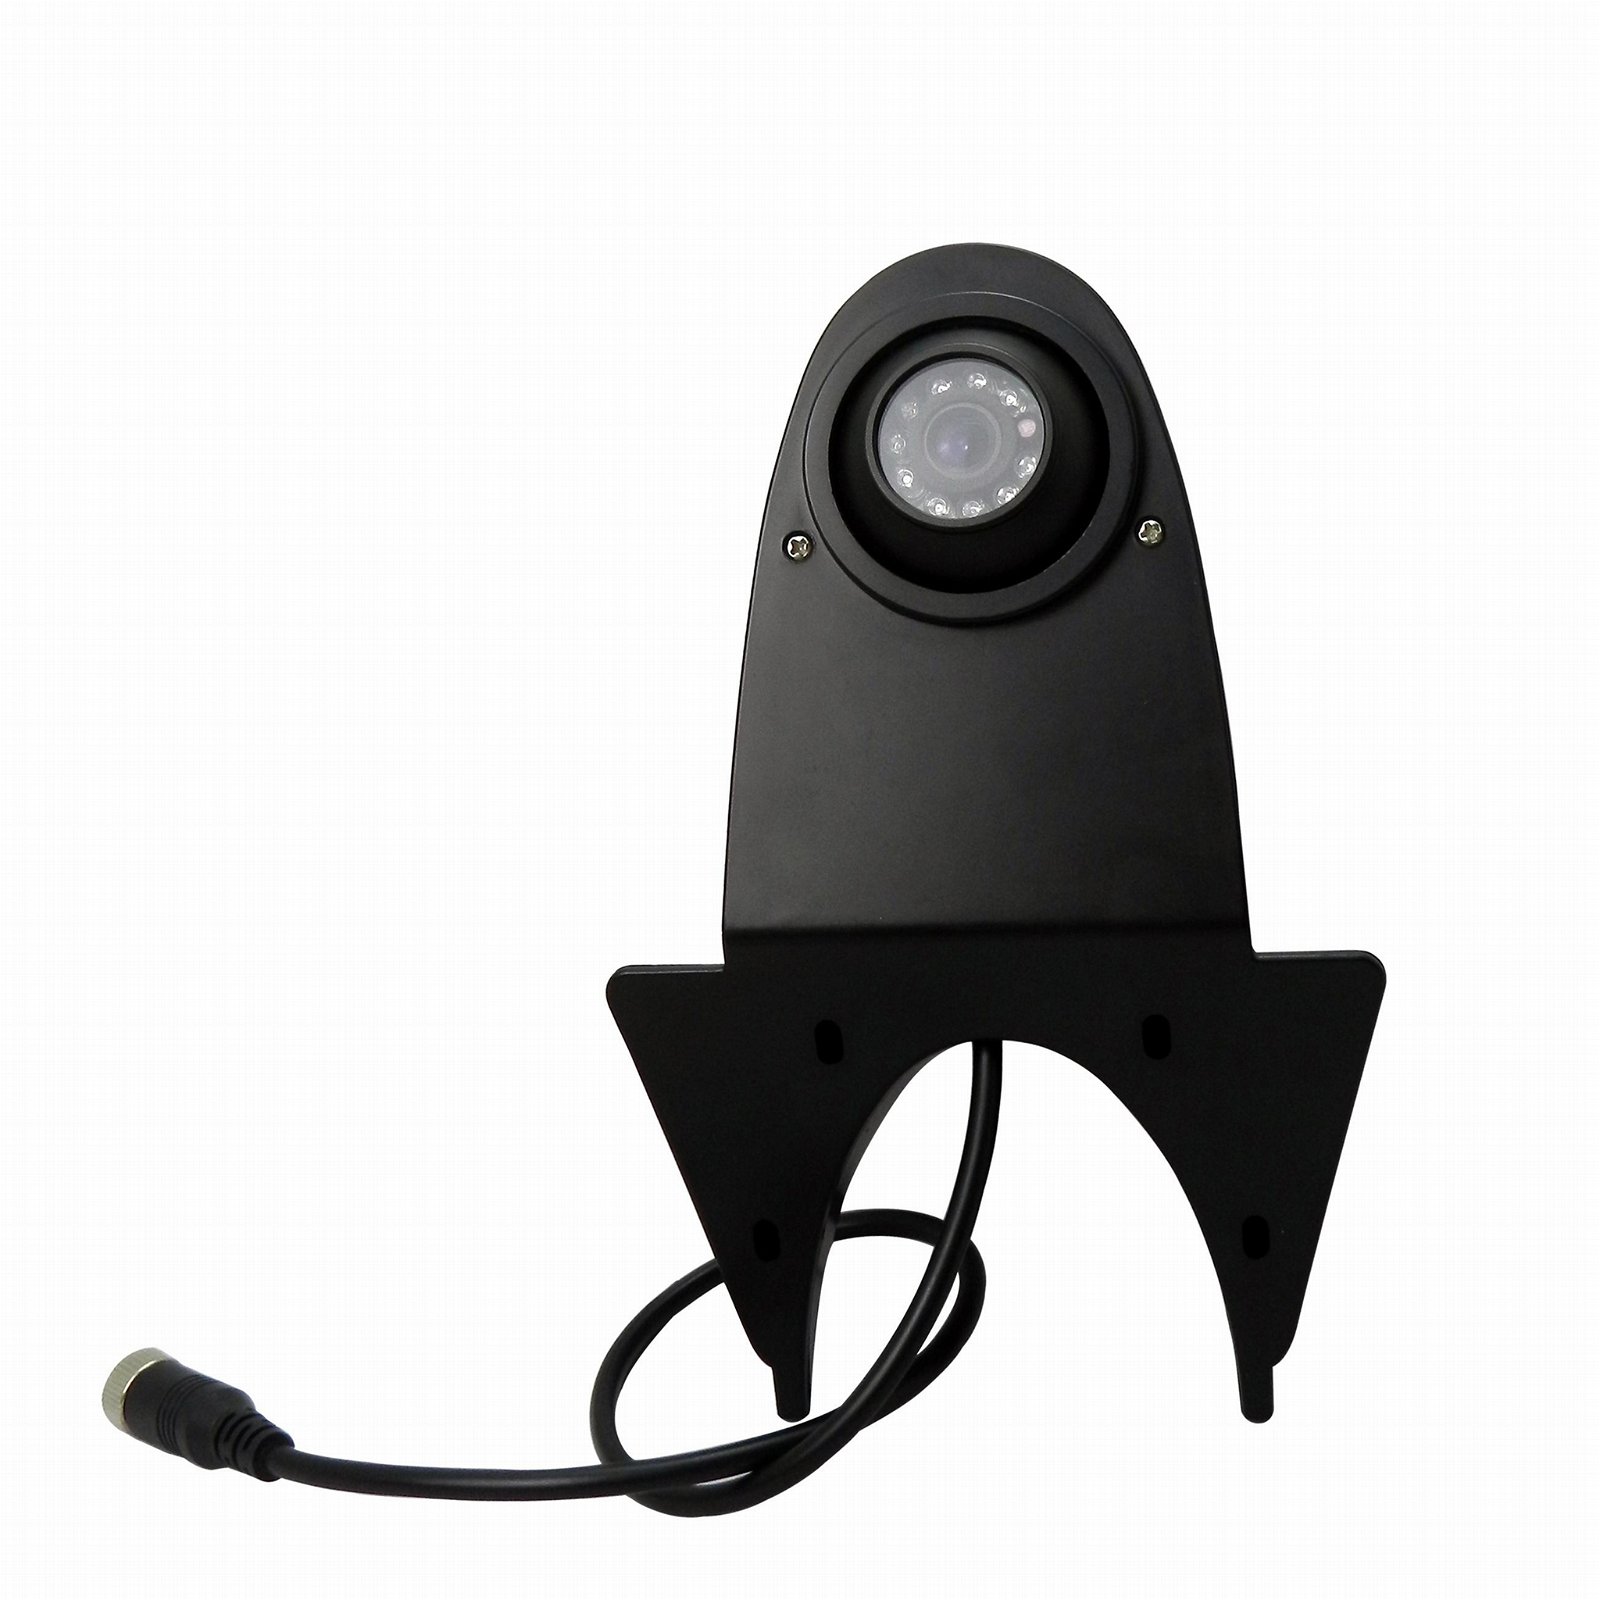 DC12V AHD 1080P Waterproof Night Vision Car Real View Camera For Vans